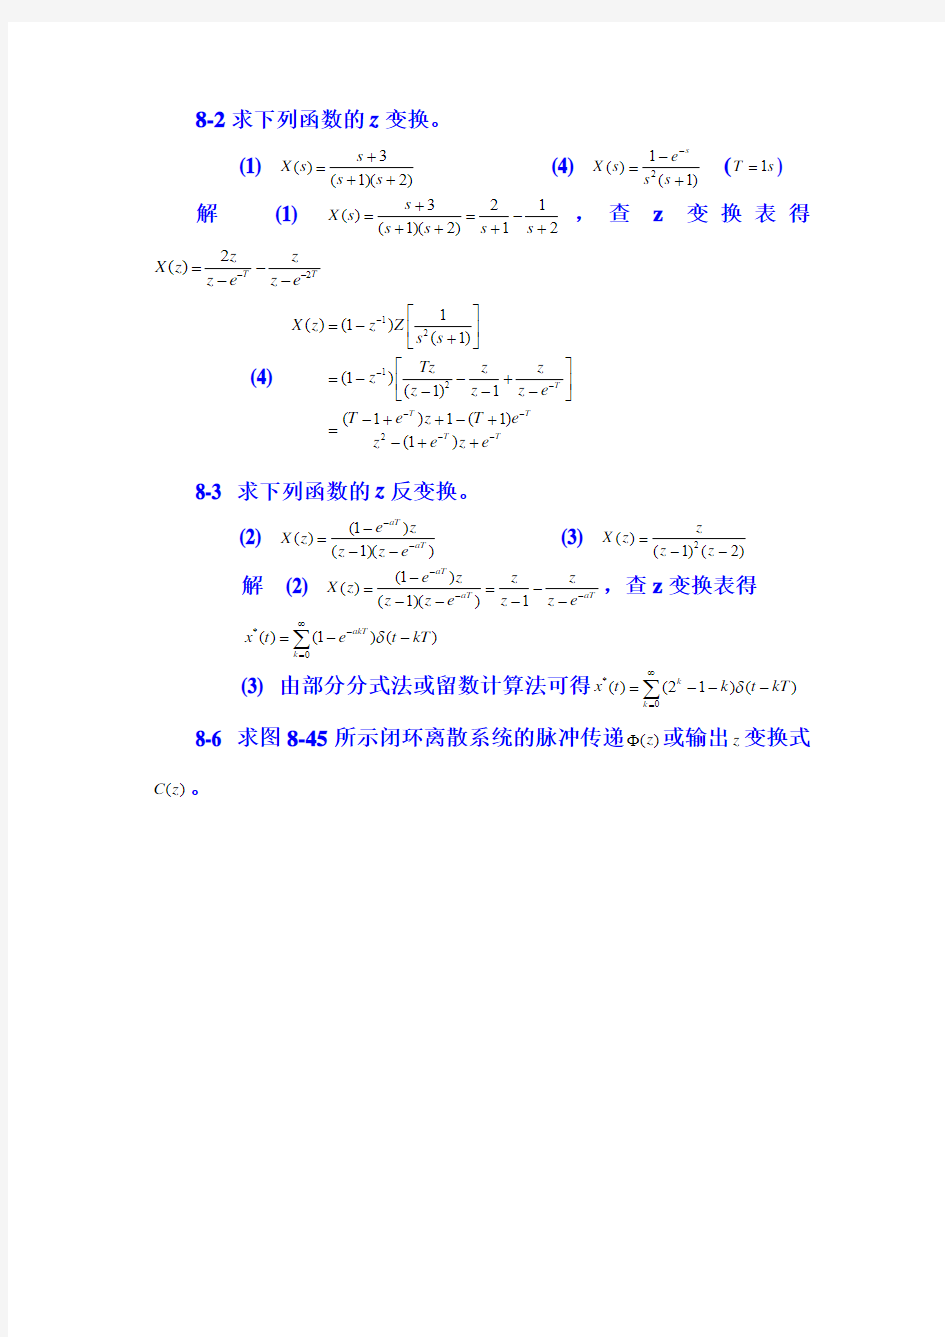 重庆大学自动控制原理第8章 习题参考答案_作业